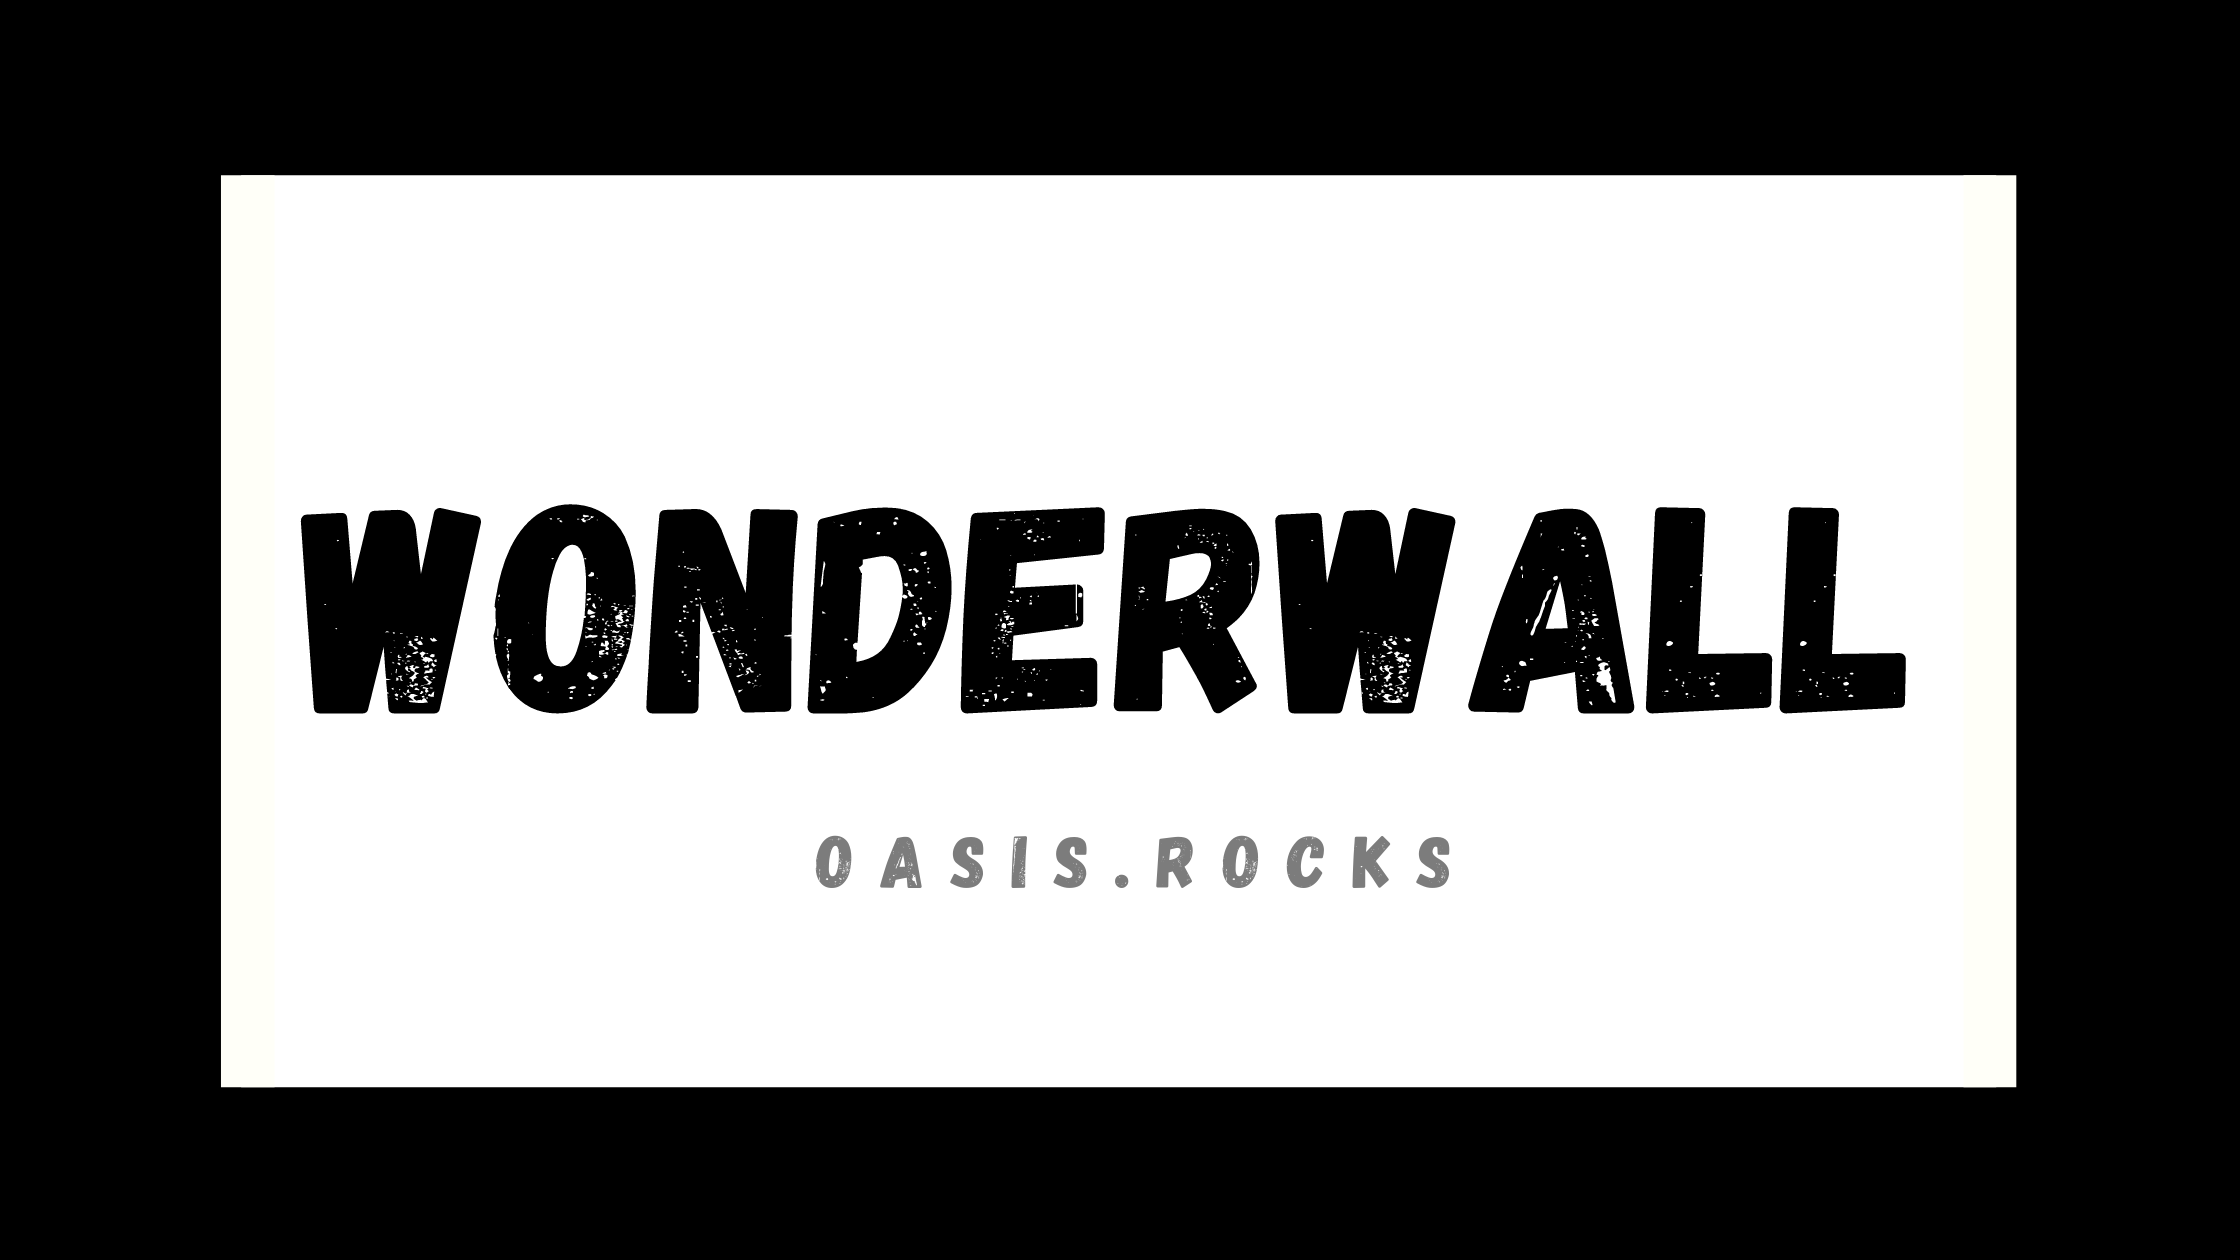 Wonderwall ist ein Song von Oasis.